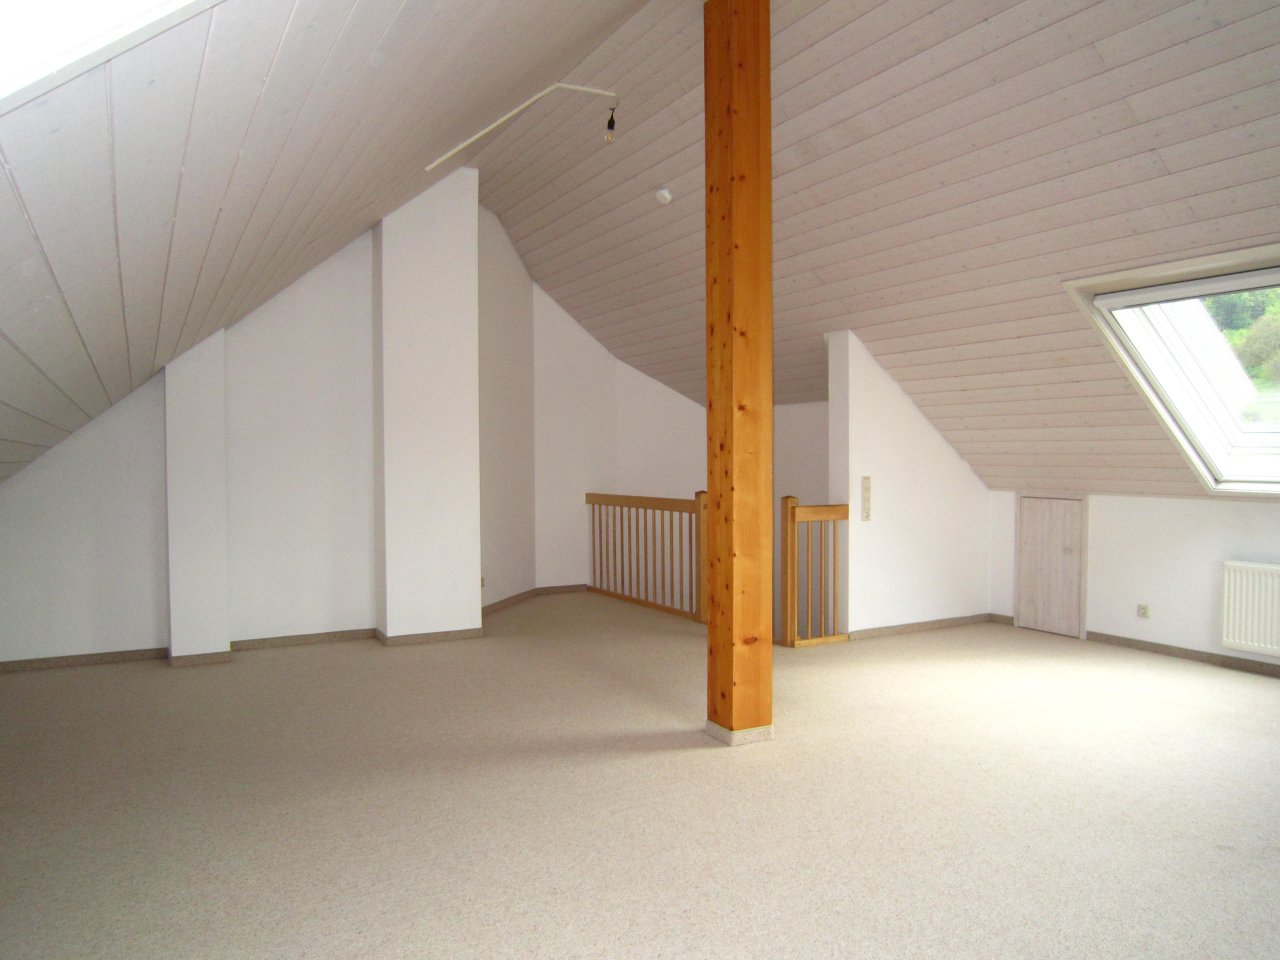 Studio im Dachspitz